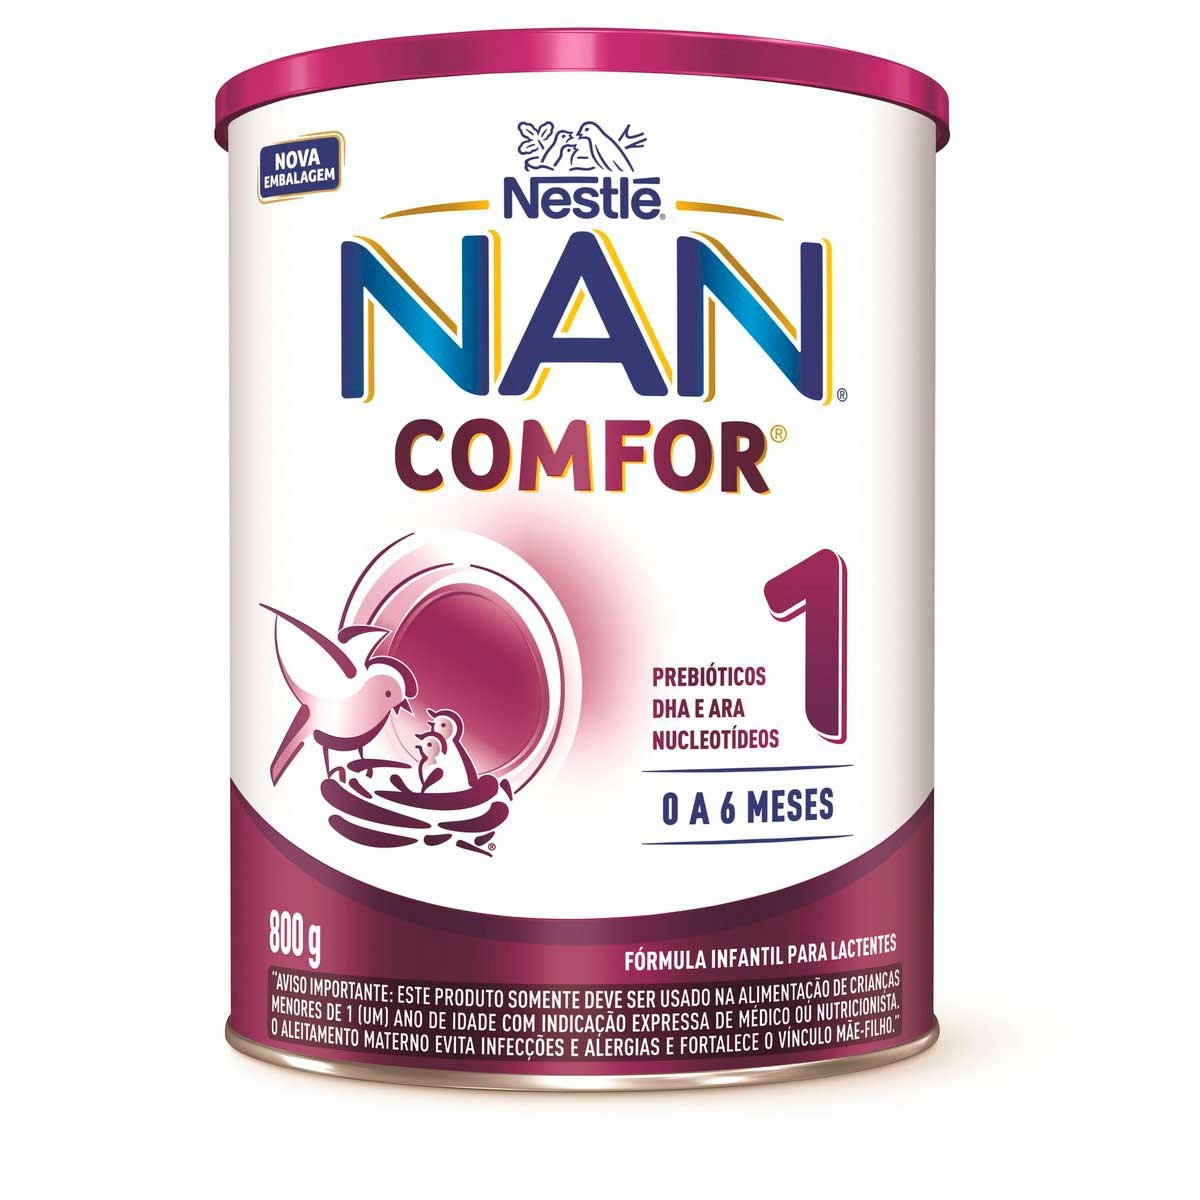 Nestlé NAN Total Confort 2 Leite Transição 800g